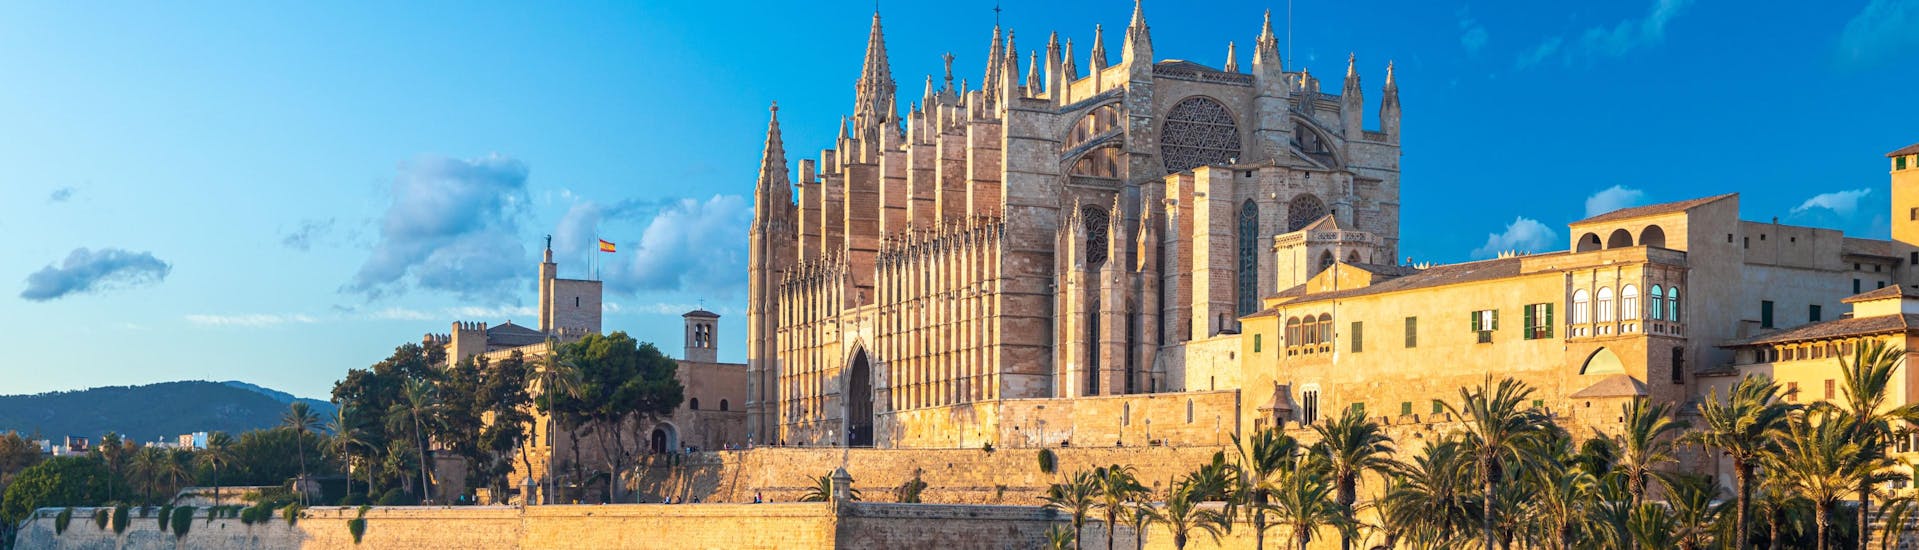 Ein Bild der berühmten Kathedrale die man bei einer Bootstour in Palma de Mallorca sehen kann.